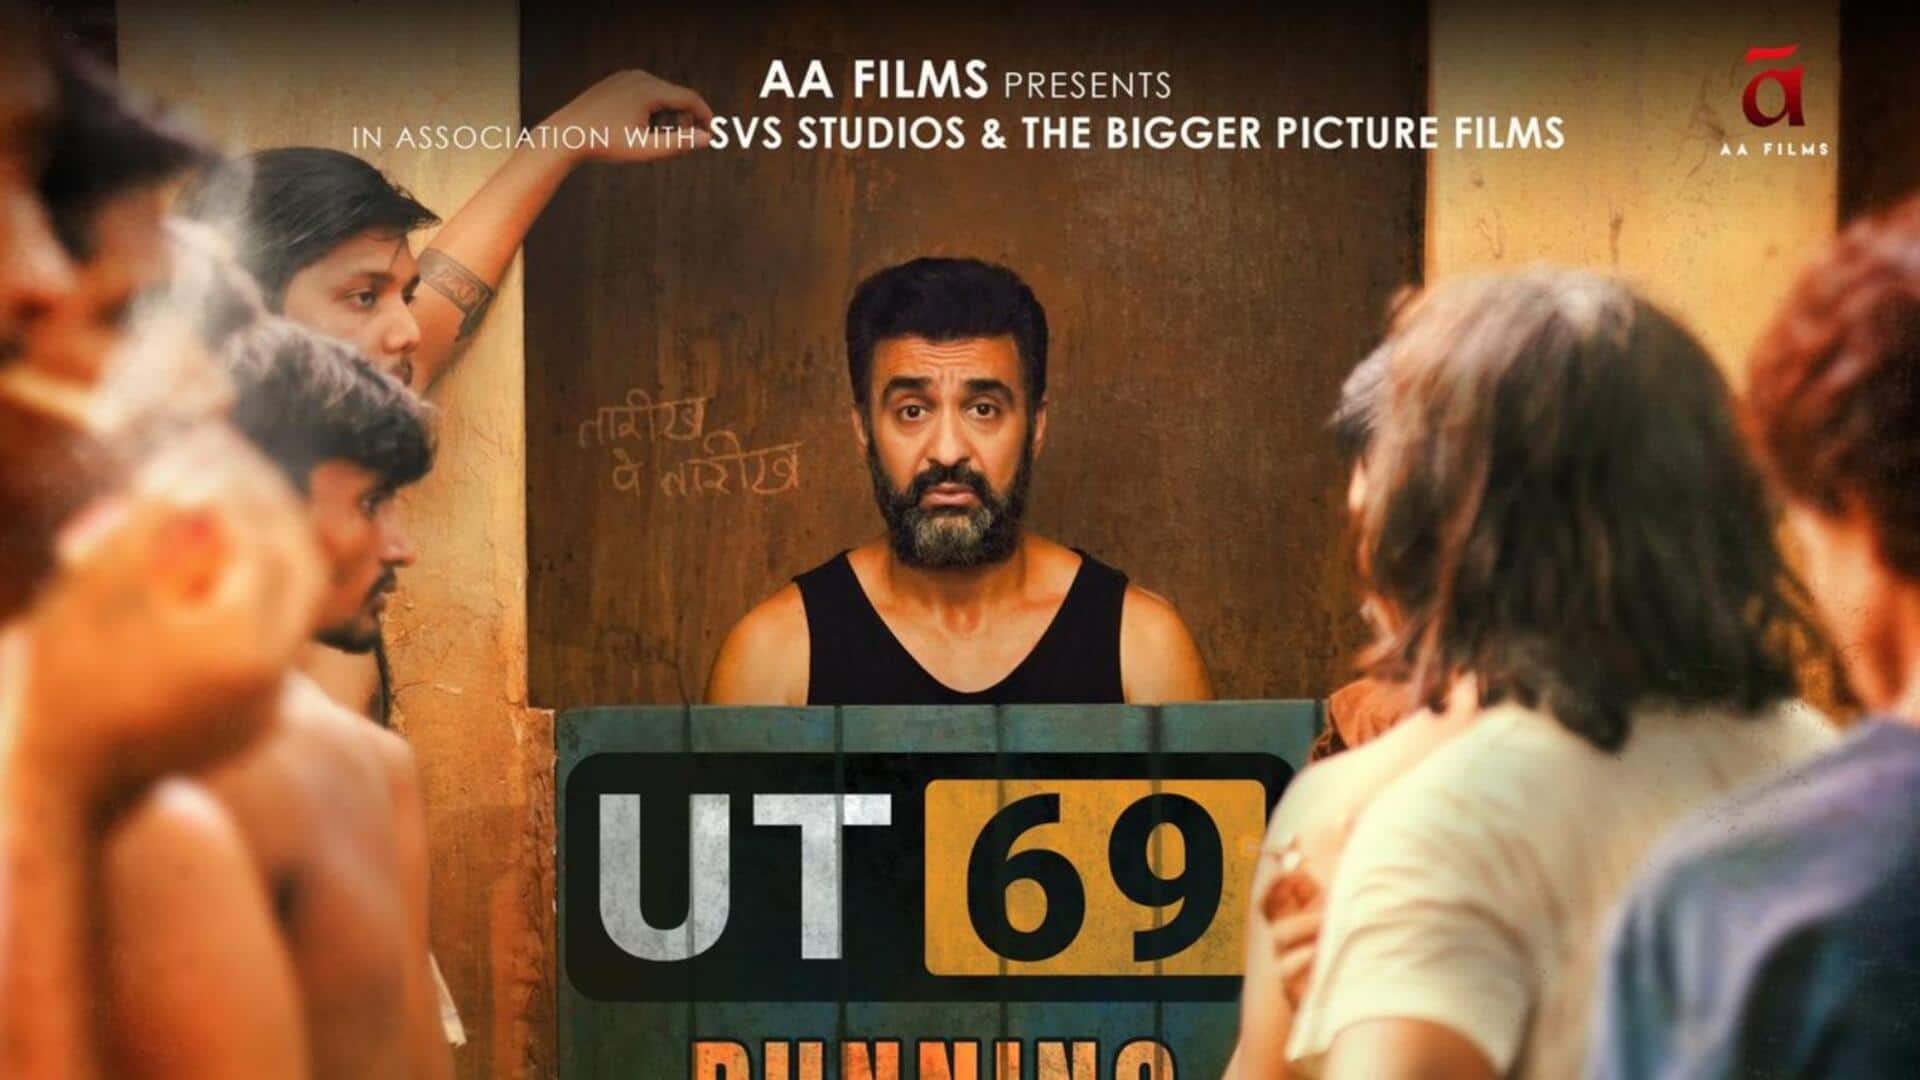 राज कुंद्रा की फिल्म 'UT 69' हुई ऑनलाइन लीक, HD प्रिंट में डाउनलोड के लिए उपलब्ध 